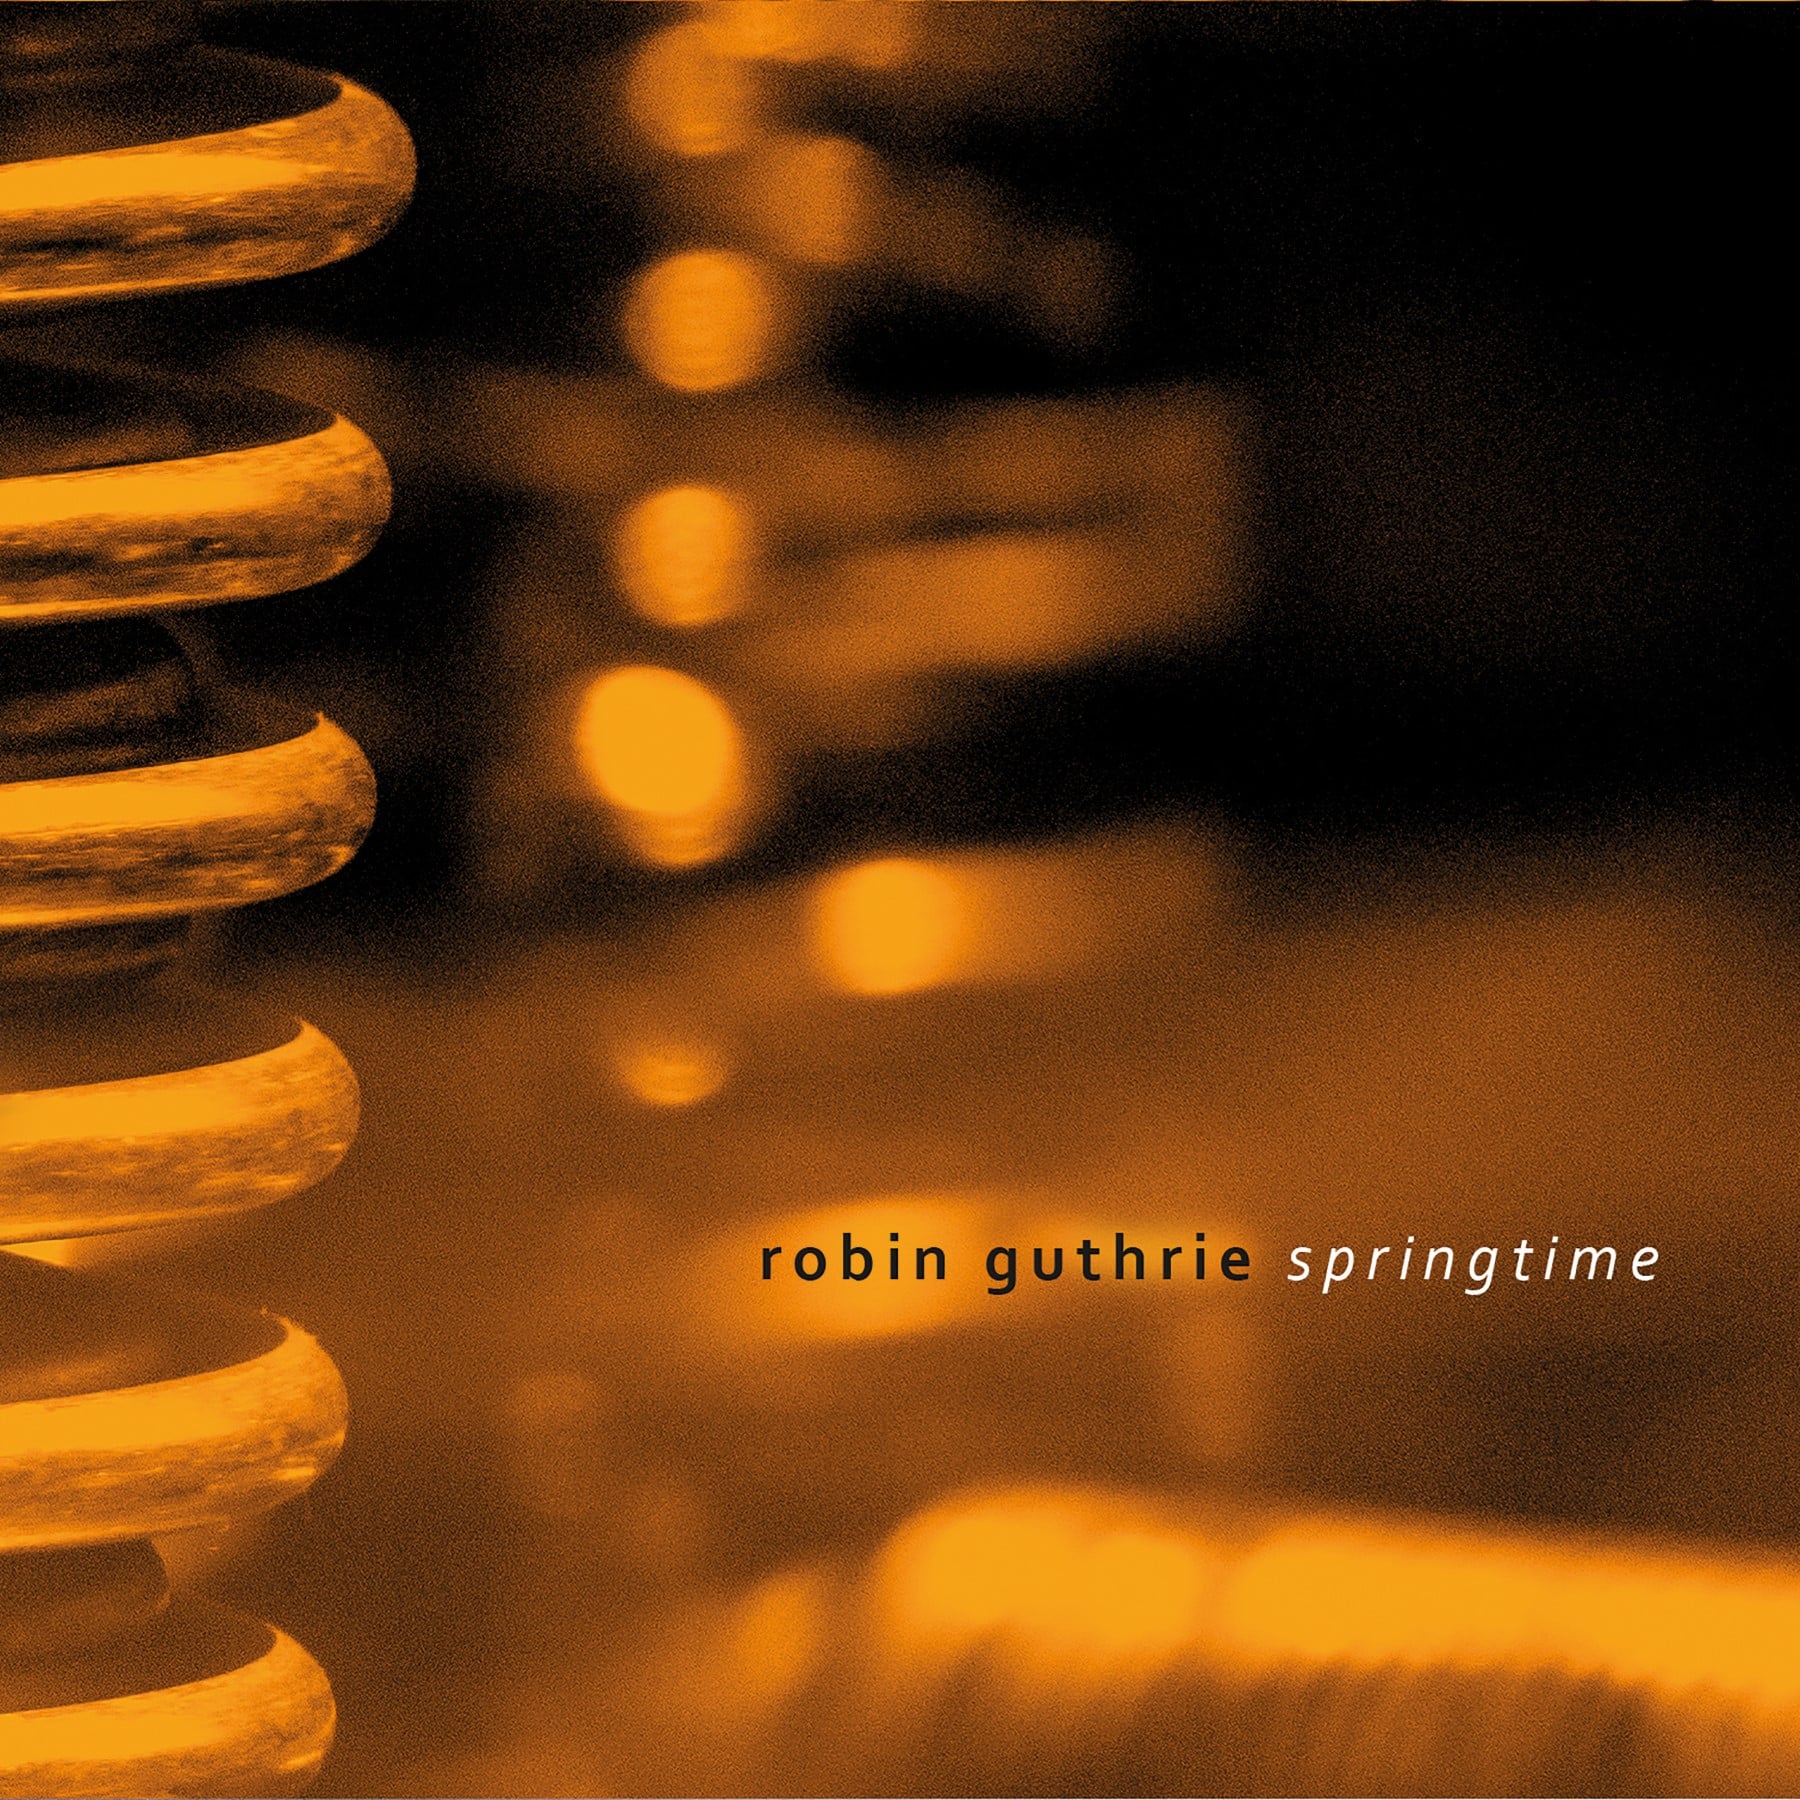 Robin Guthrie (Cocteau Twins) comemora 60º aniversário lançando novo EP; “Springtime”